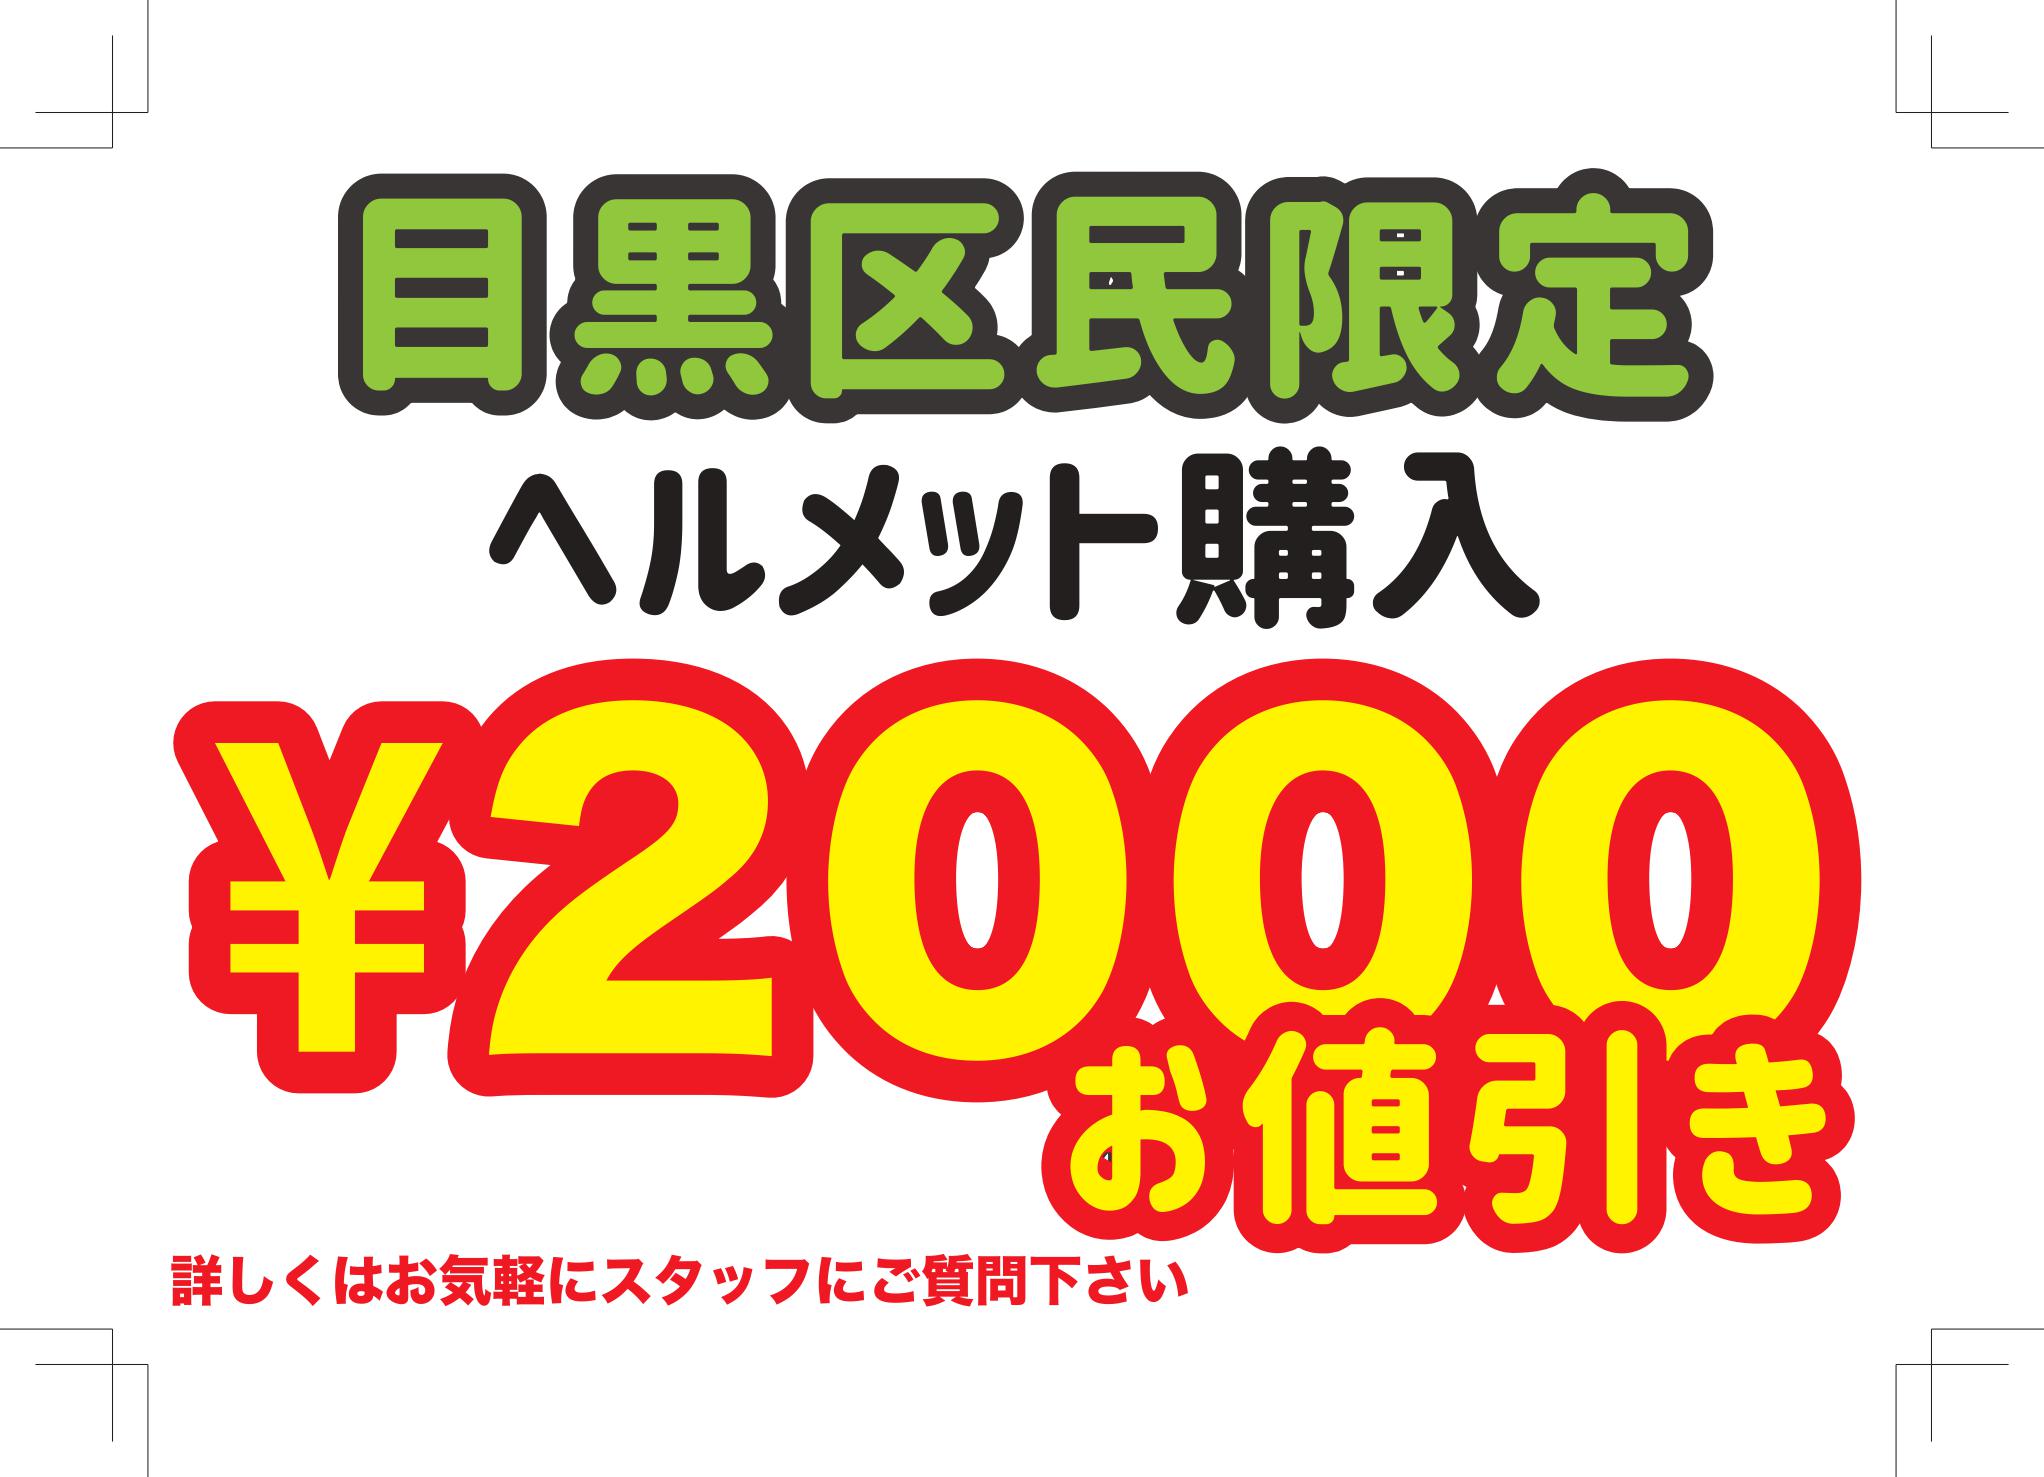 【都立大学店】限定ヘルメット購入補助￥2,000引きキャンペーン実施中